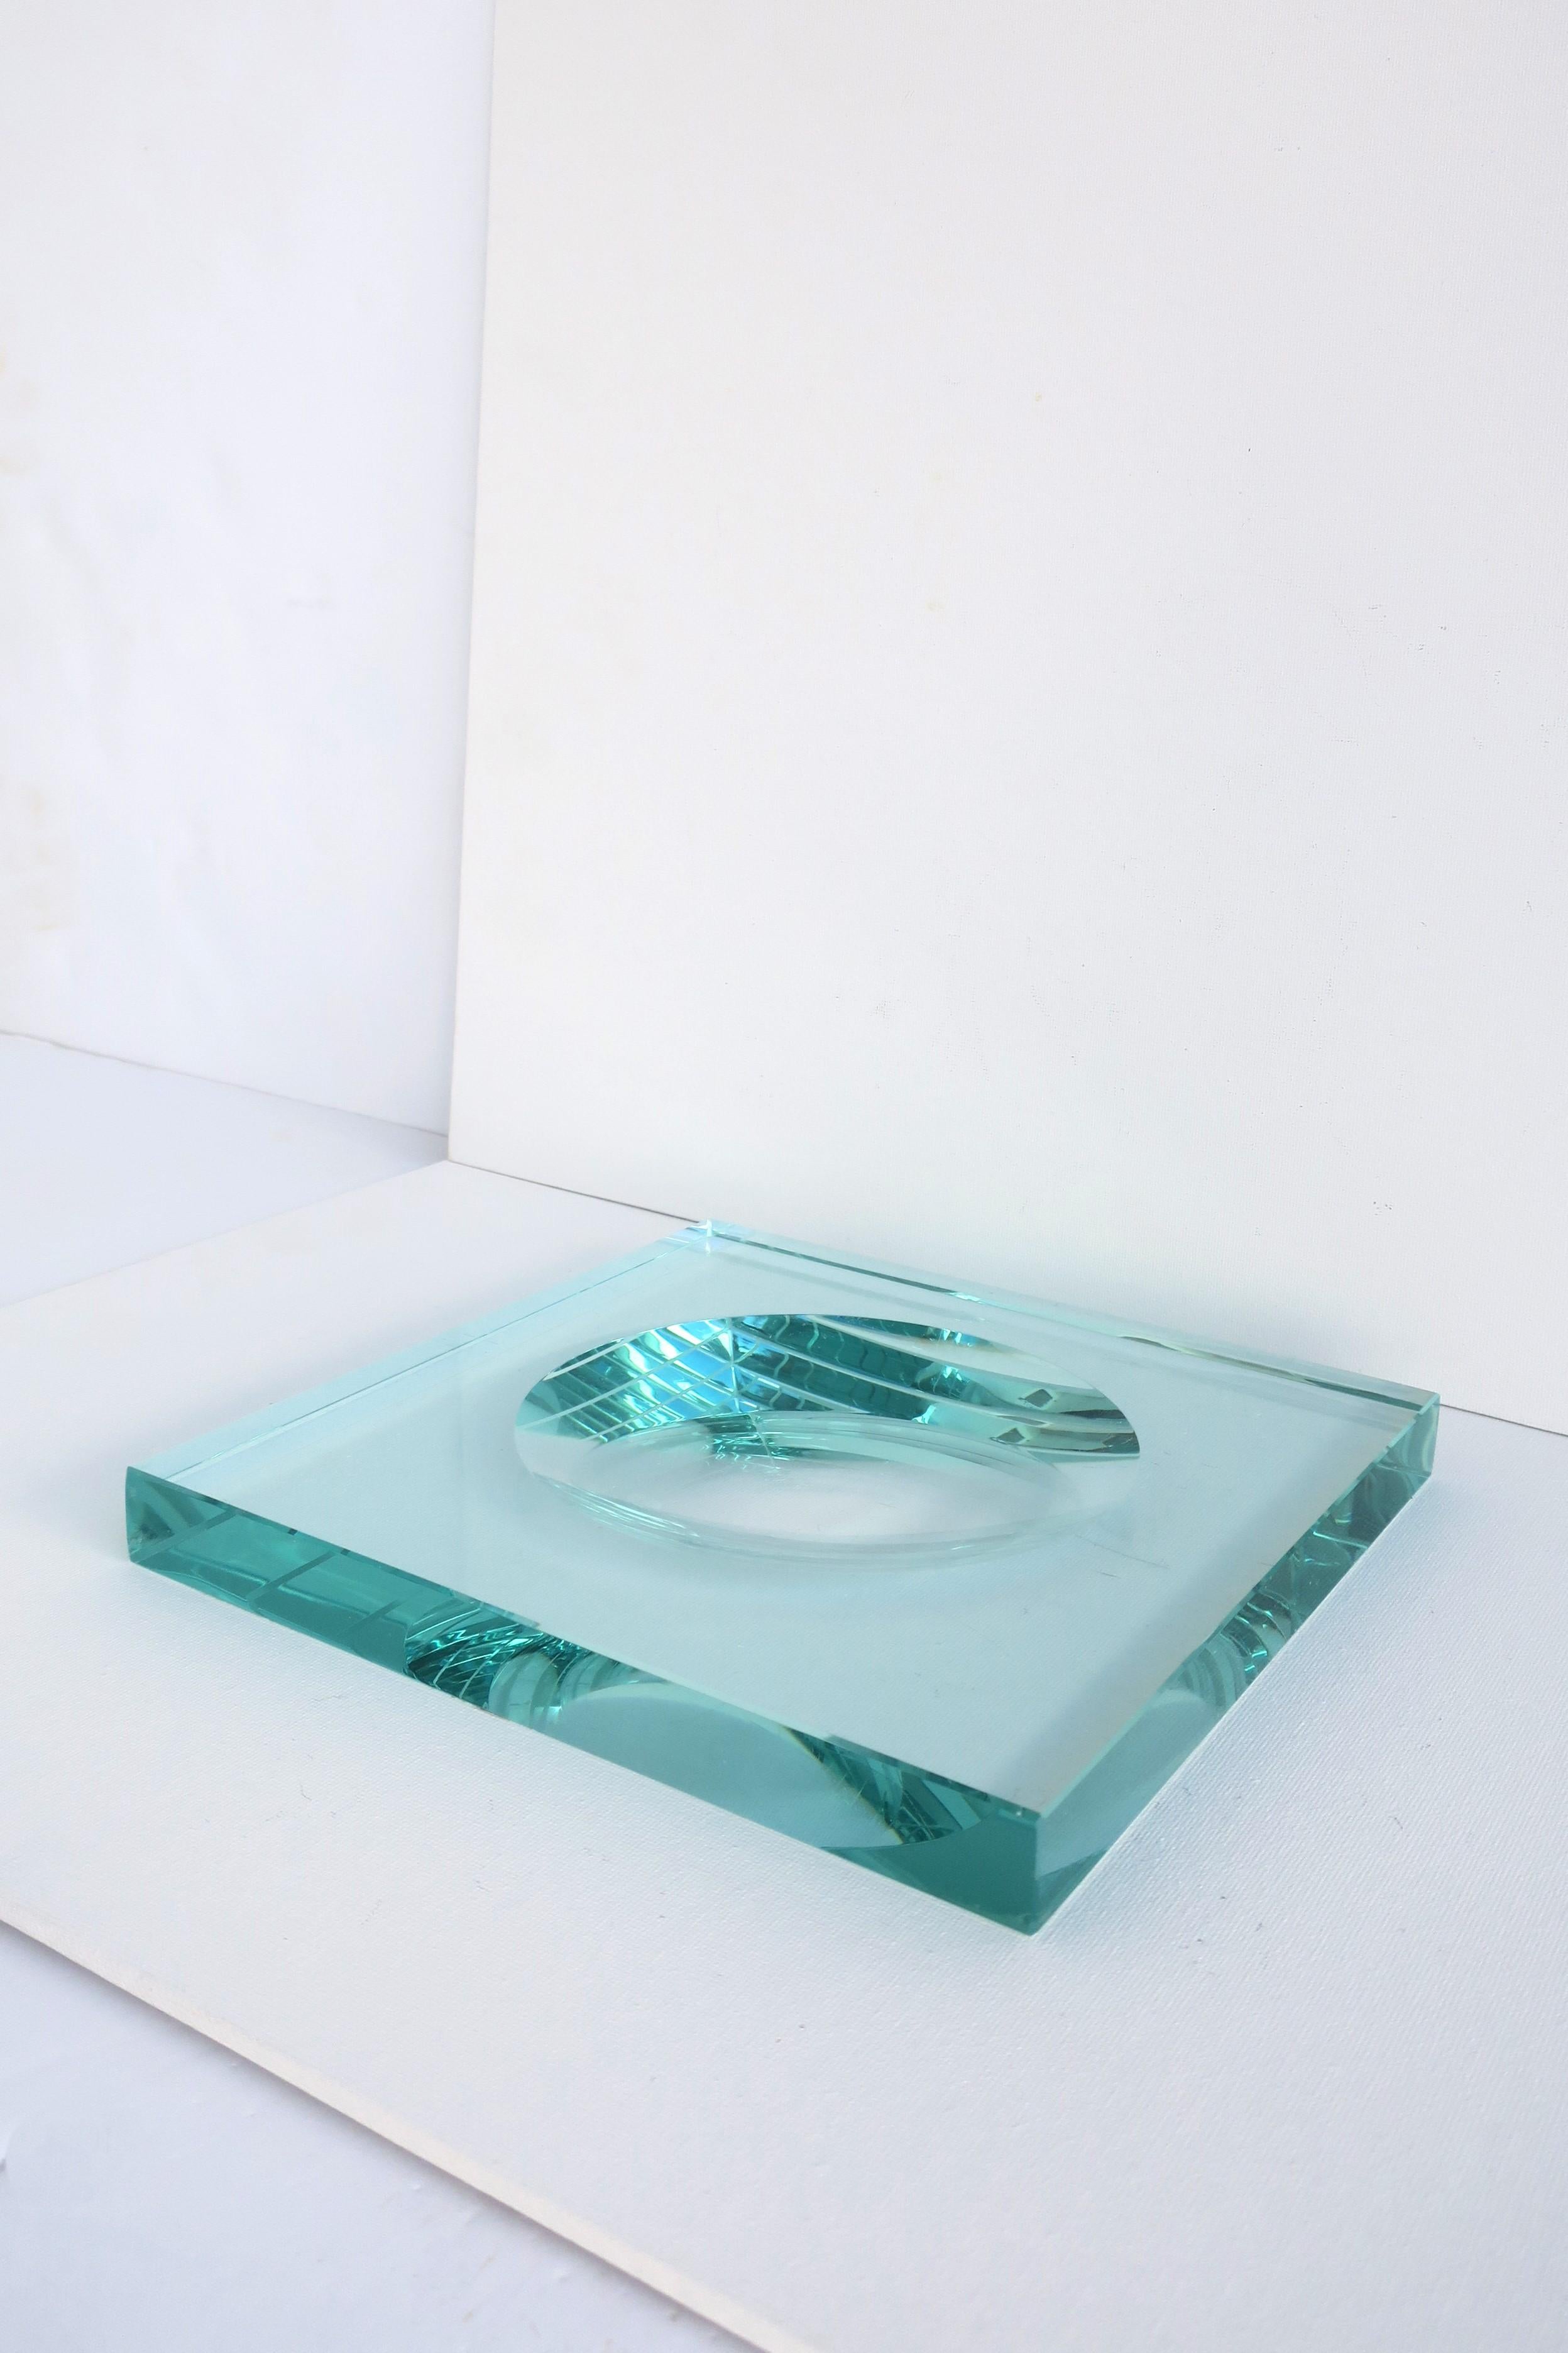 **Zwei verfügbar, jedes separat verkauft, wie in der Auflistung. 

Eine schöne transparente Ganzglas-Videotasche im minimalistischen oder postmodernen Designstil, im Stil des italienischen Designs Maison, Fontana Arte, ca. Ende des 20. Jahrhunderts.